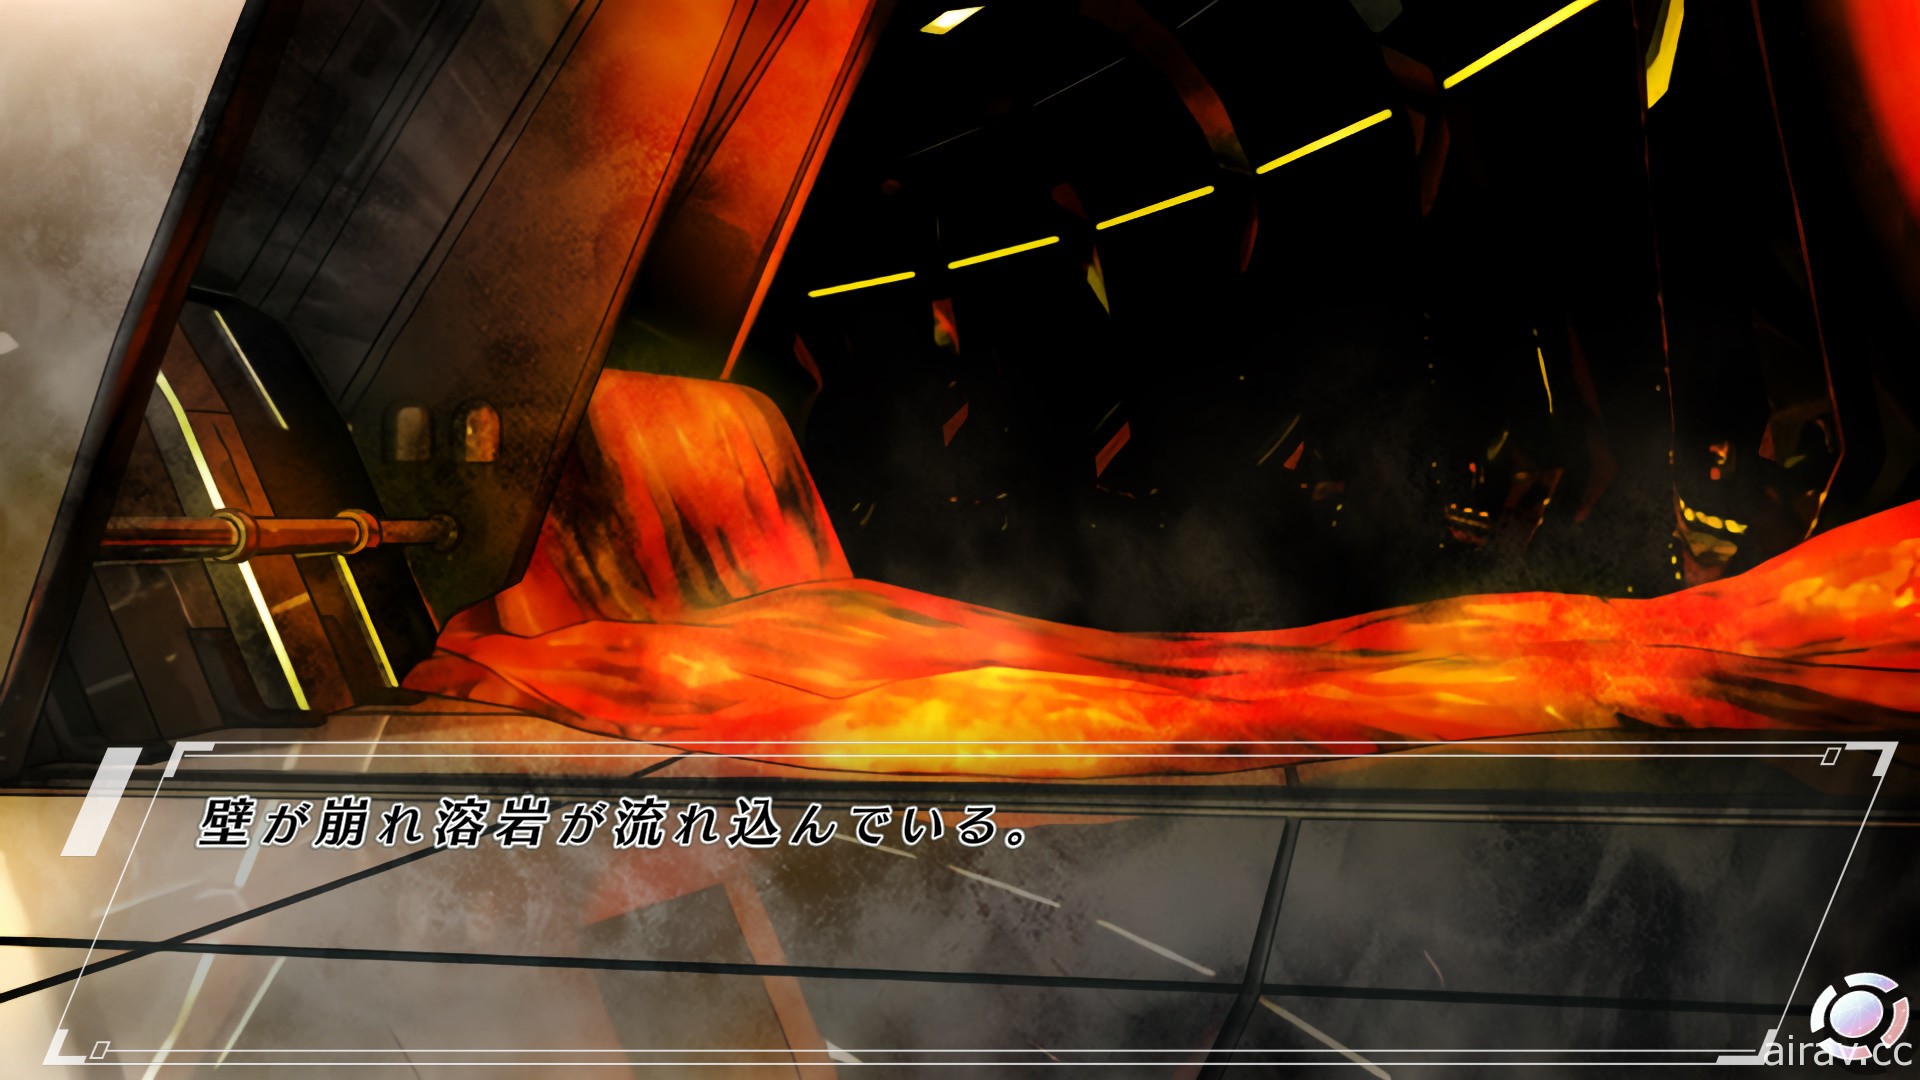 以 PSP 版為基礎移植之新作《密室犧牲者》12 月中發售 新增提示功能、畫廊模式